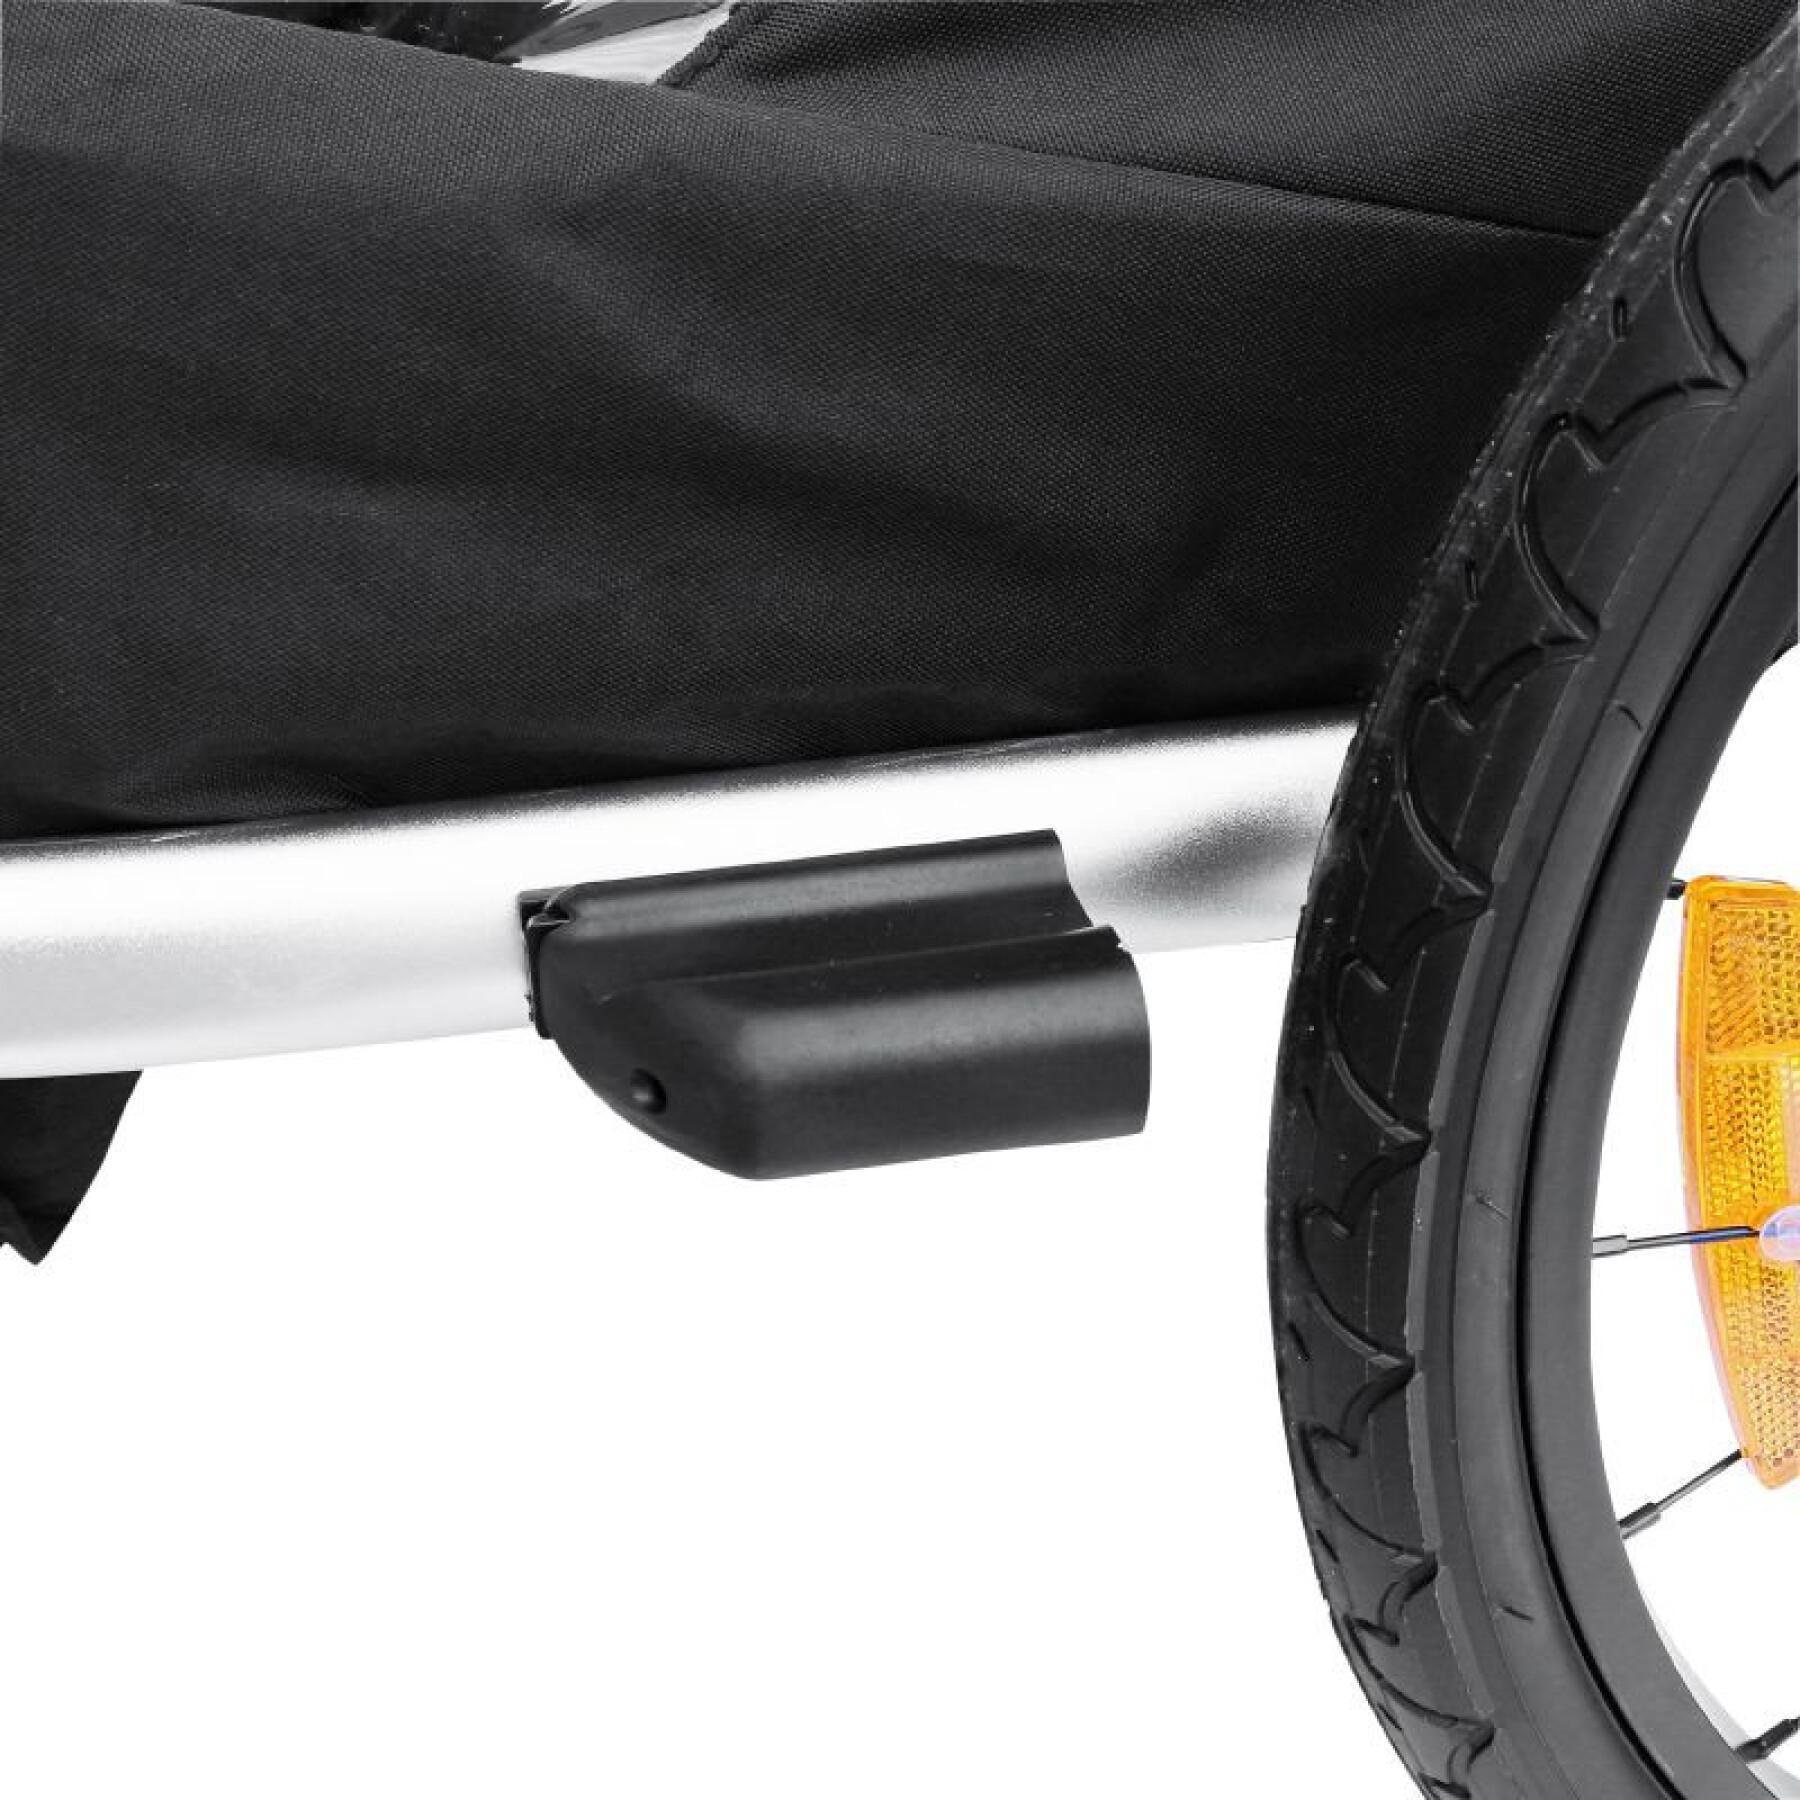 Overdekte 2-zits aluminium maxi kinderwagen fietskar met wielasbevestiging - geleverd met voorwiel en remgreep - opvouwbaar zonder gereedschap P2R 36 Kg